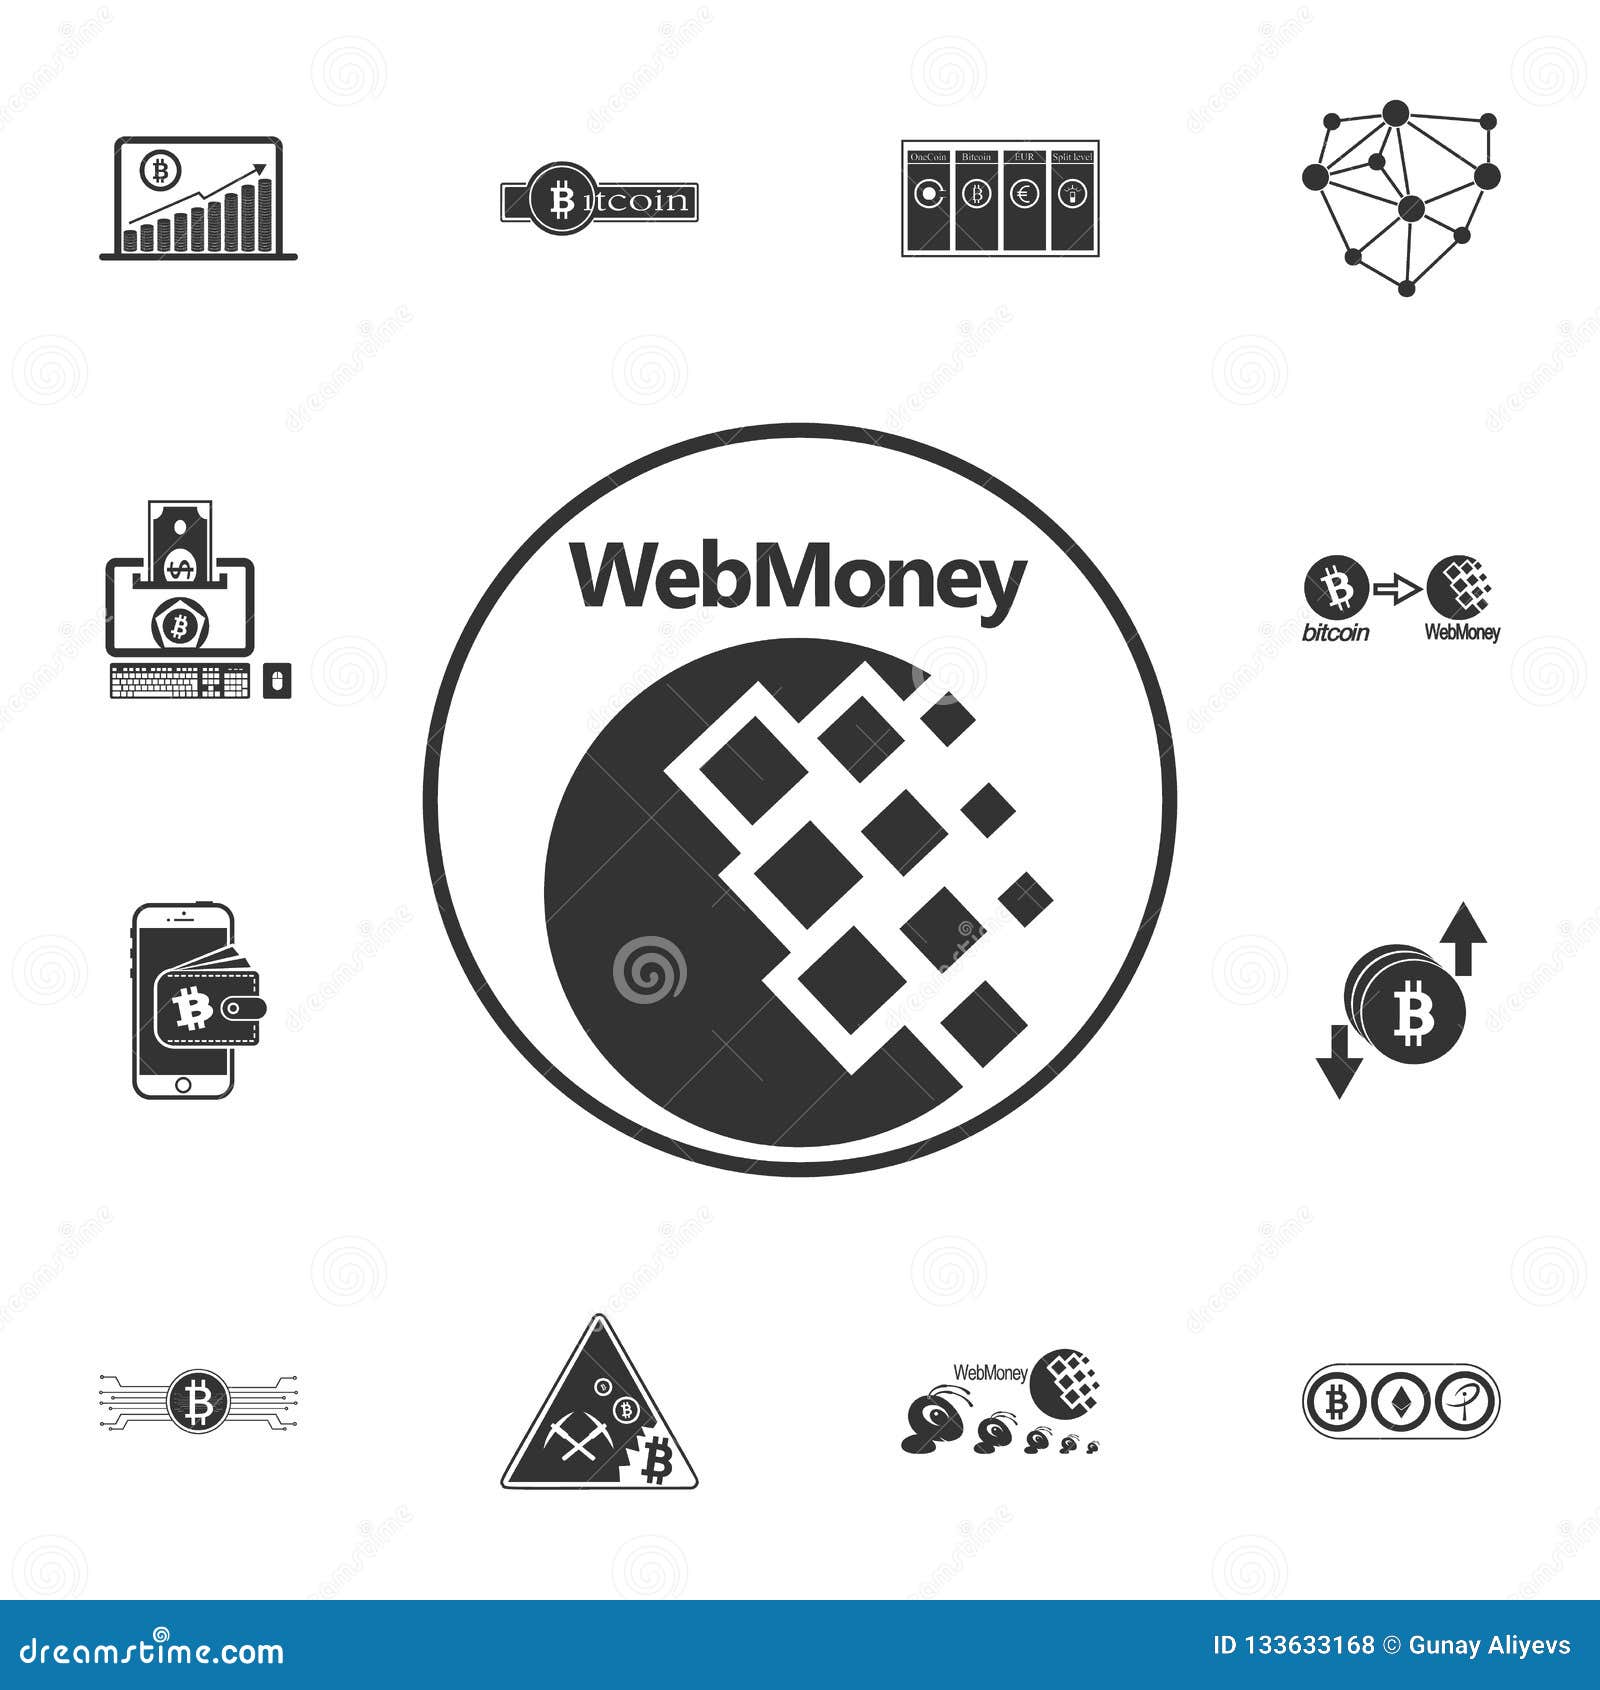 WebMoney Arbitrage